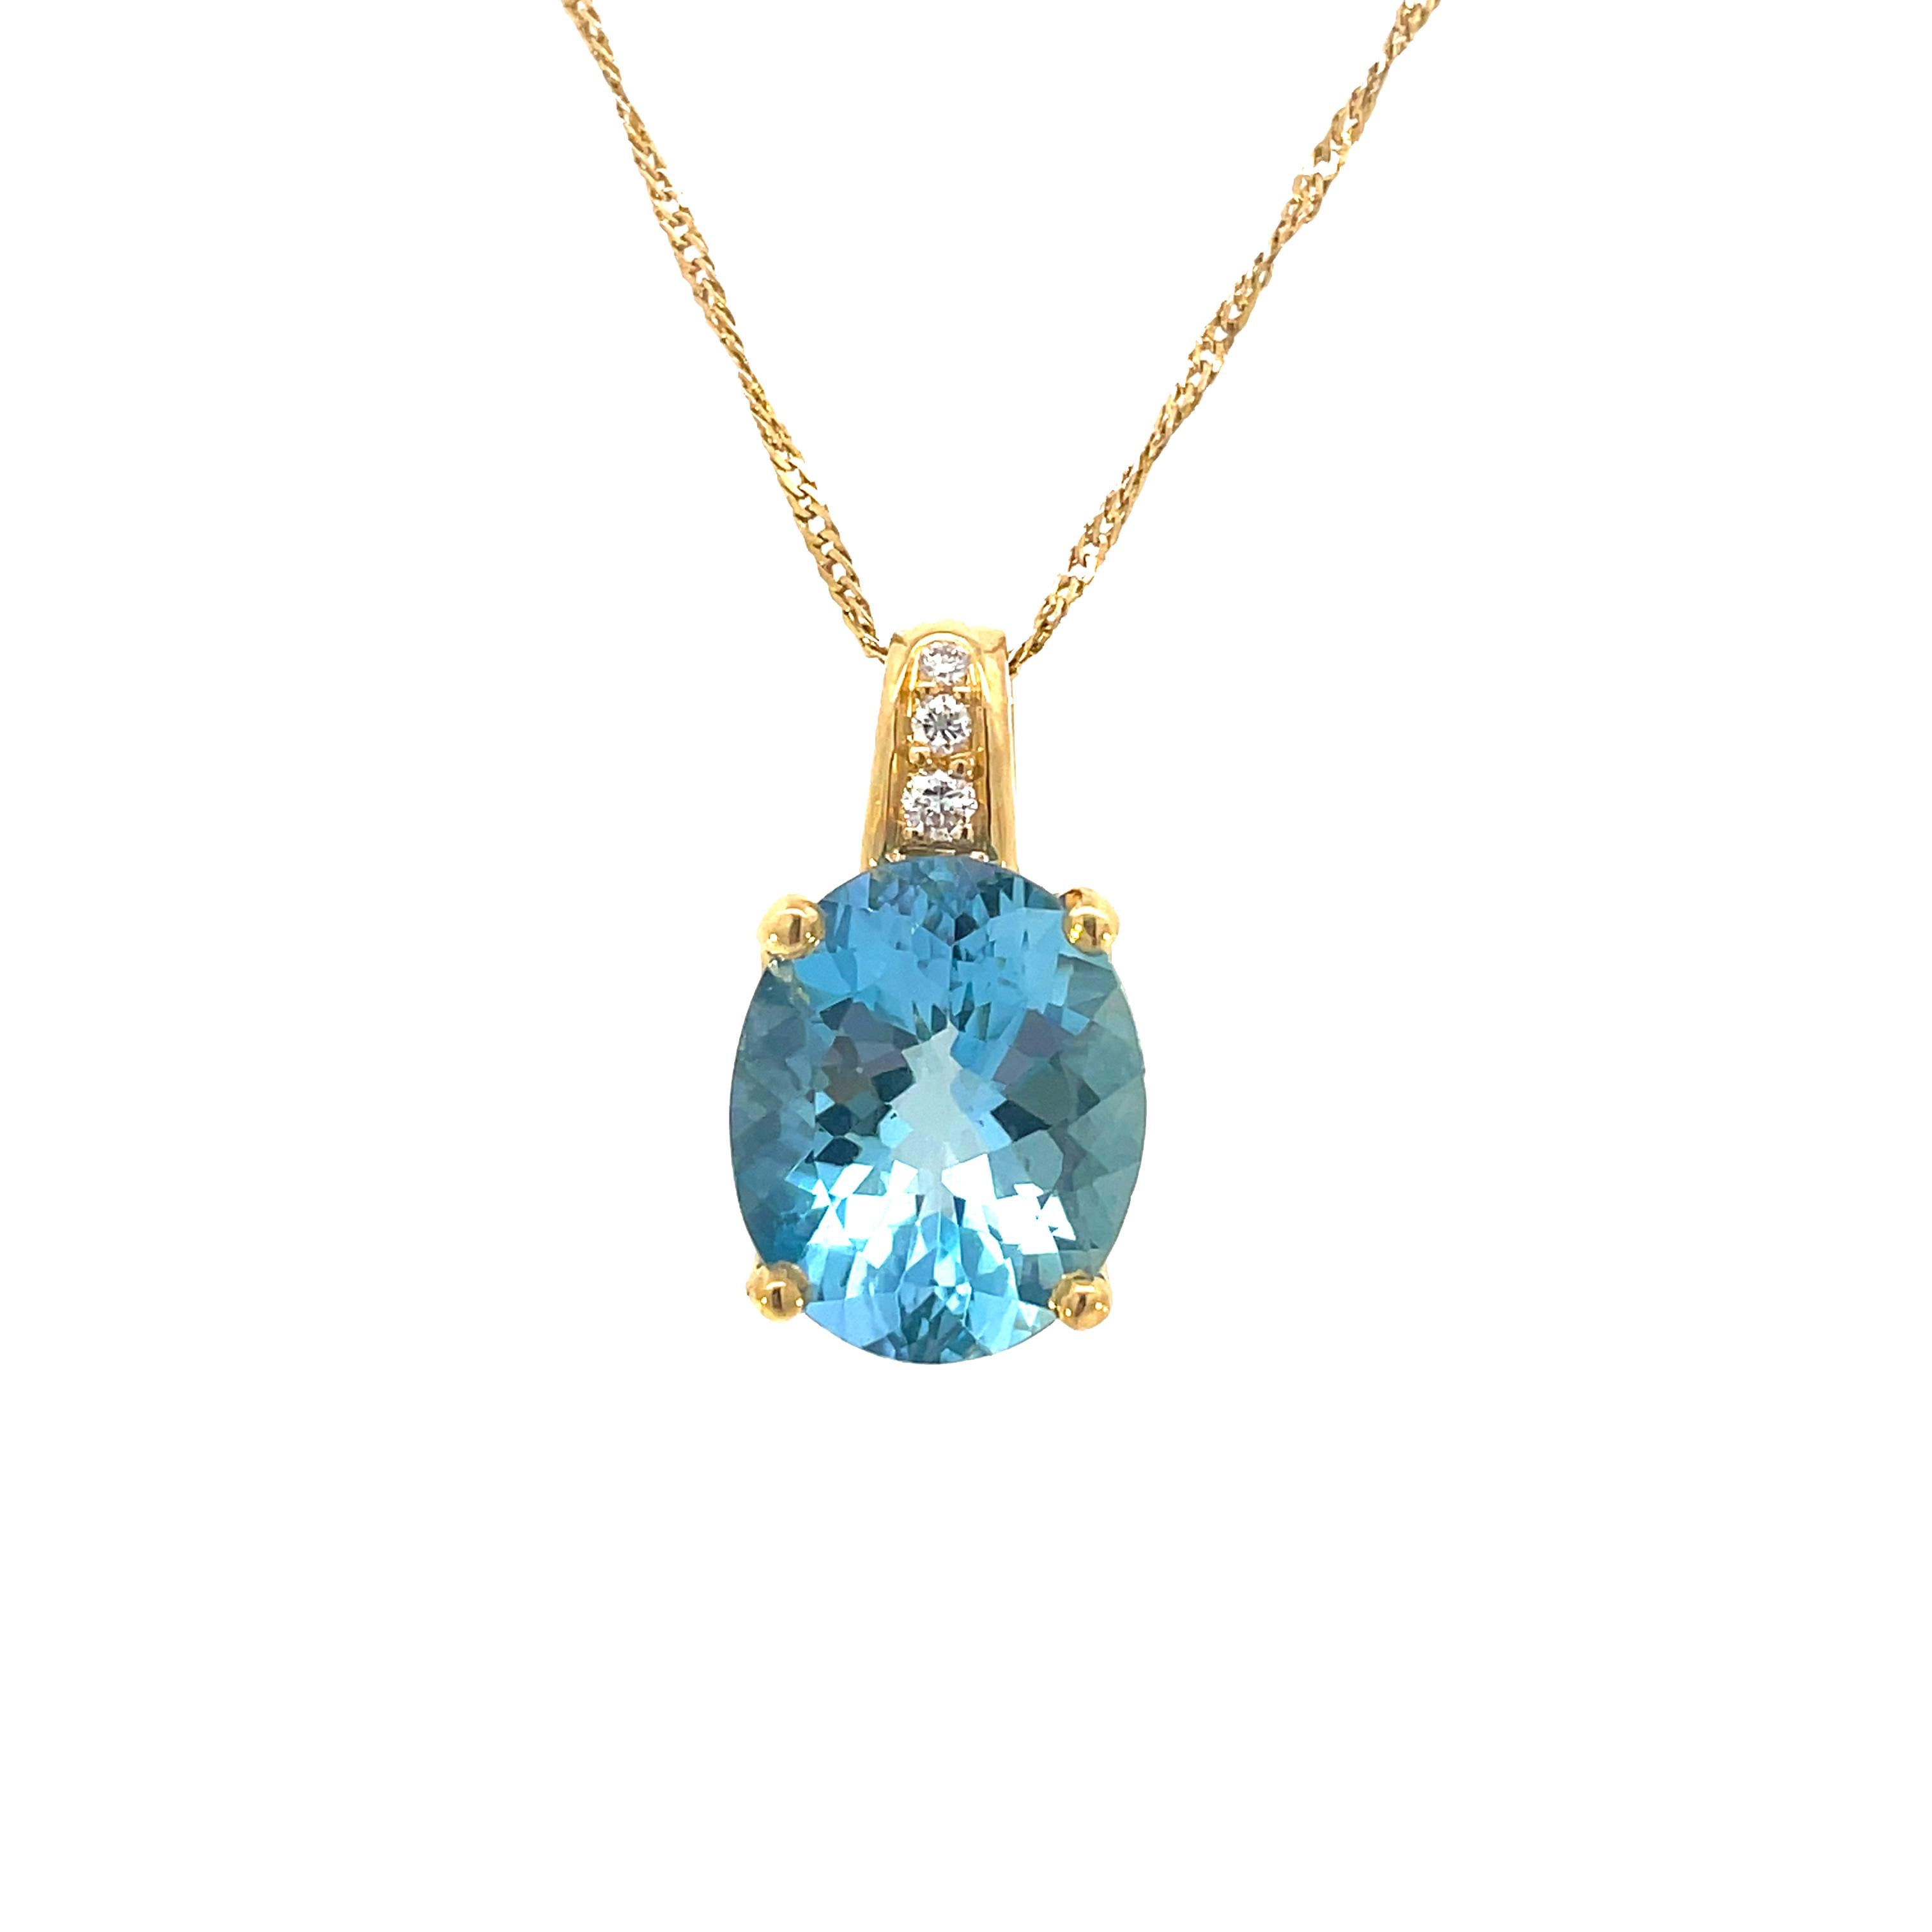 Cet élégant collier H. Stern en or jaune 18 carats est orné d'un pendentif ovale en aigue-marine et de trois diamants étincelants ! Une magnifique aigue-marine bleue de forme ovale, pesant 4,50 carats, rayonne brillamment à l'intérieur d'une monture